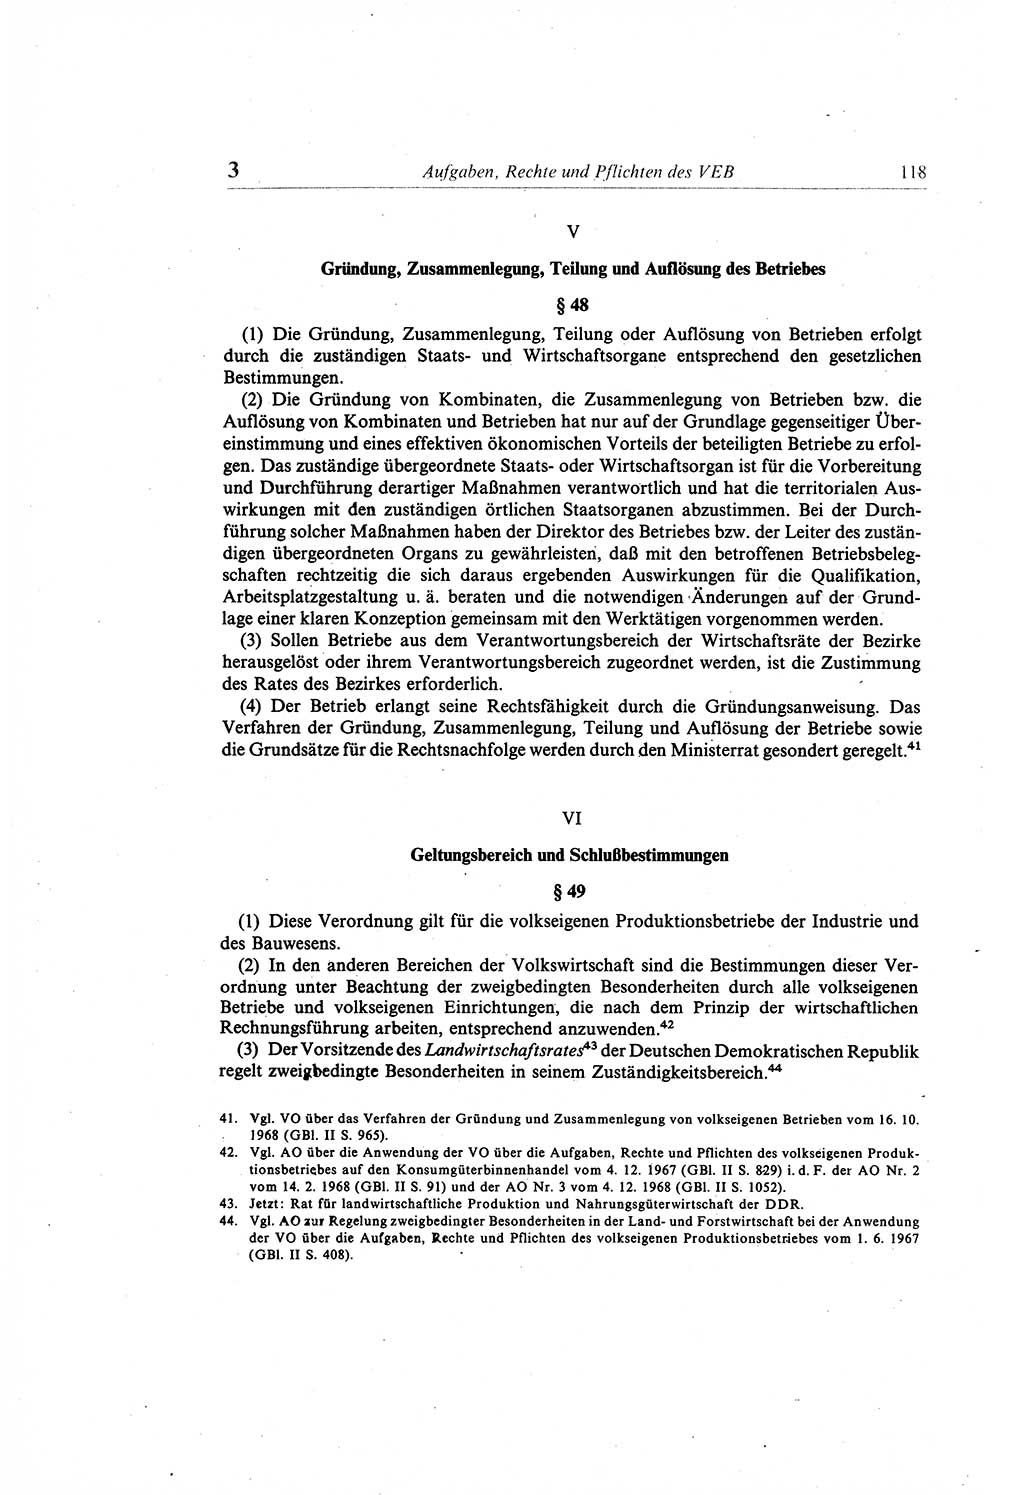 Gesetzbuch der Arbeit (GBA) und andere ausgewählte rechtliche Bestimmungen [Deutsche Demokratische Republik (DDR)] 1968, Seite 118 (GBA DDR 1968, S. 118)